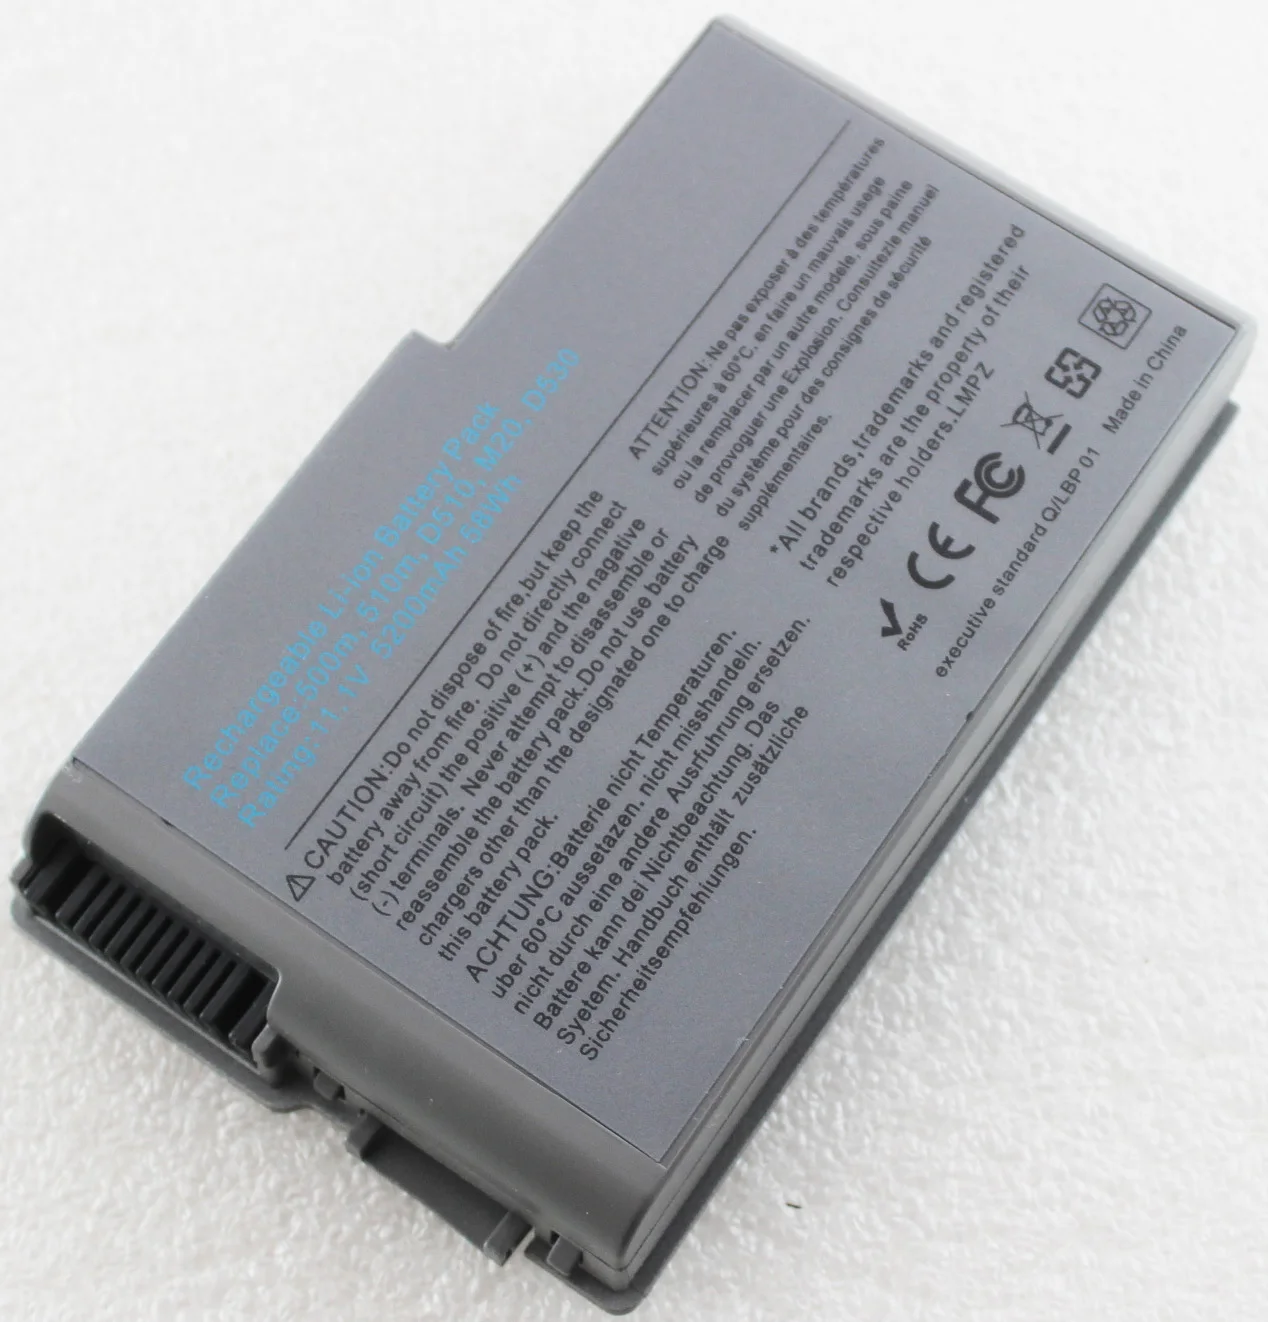 HUAHERO Bateriei pentru Dell Latitude D520 D500 D600 D610 D530 D505 D510 Inspiron 500m 510m, 600m C1295 312-0090 451-10133 9X821 PC